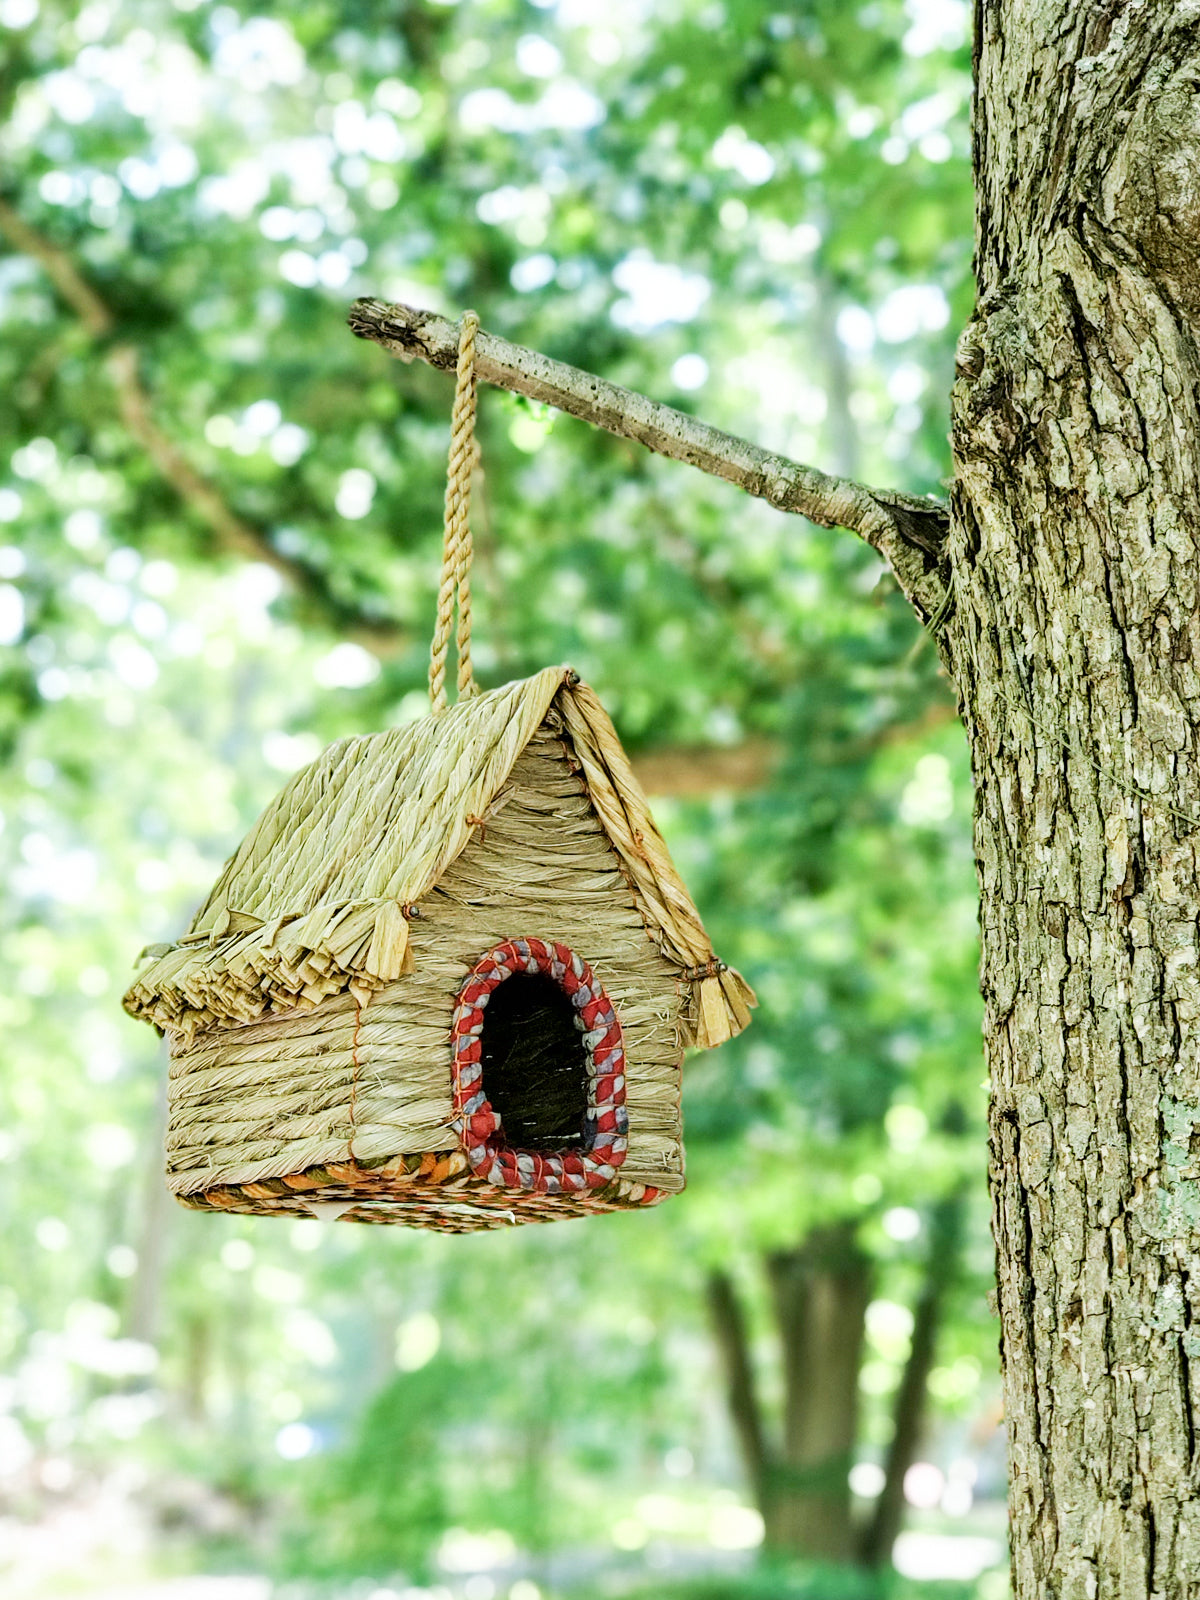  Seagrass & Sari Birdhouse - Cabin by KORISSA KORISSA Perfumarie